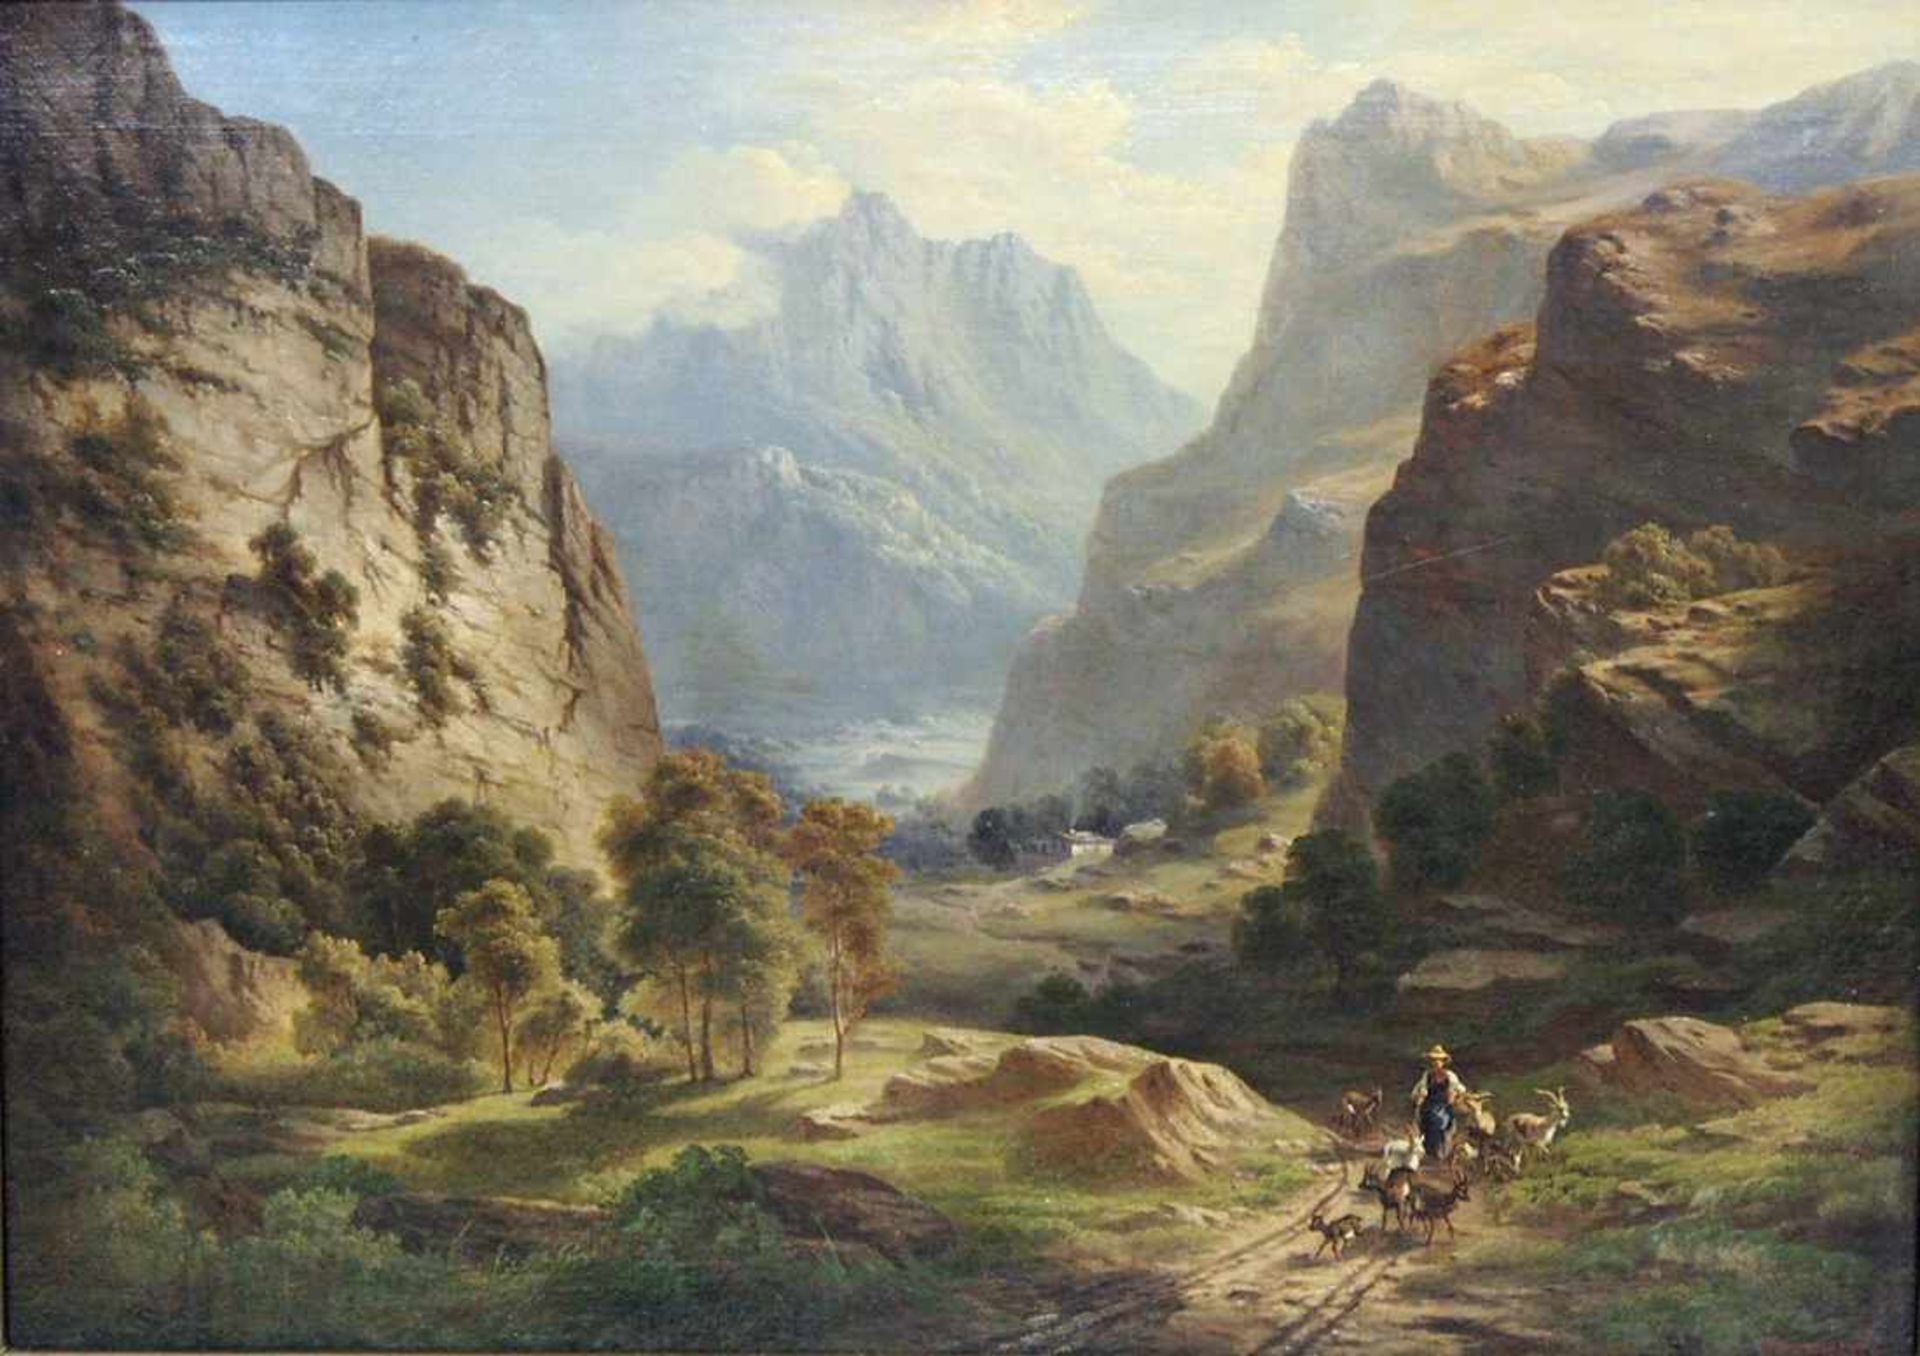 BERNARDI, Joseph1826-1907Im Berner OberlandÖl auf Leinwand, signiert unten rechts, 53 x 88 cm,